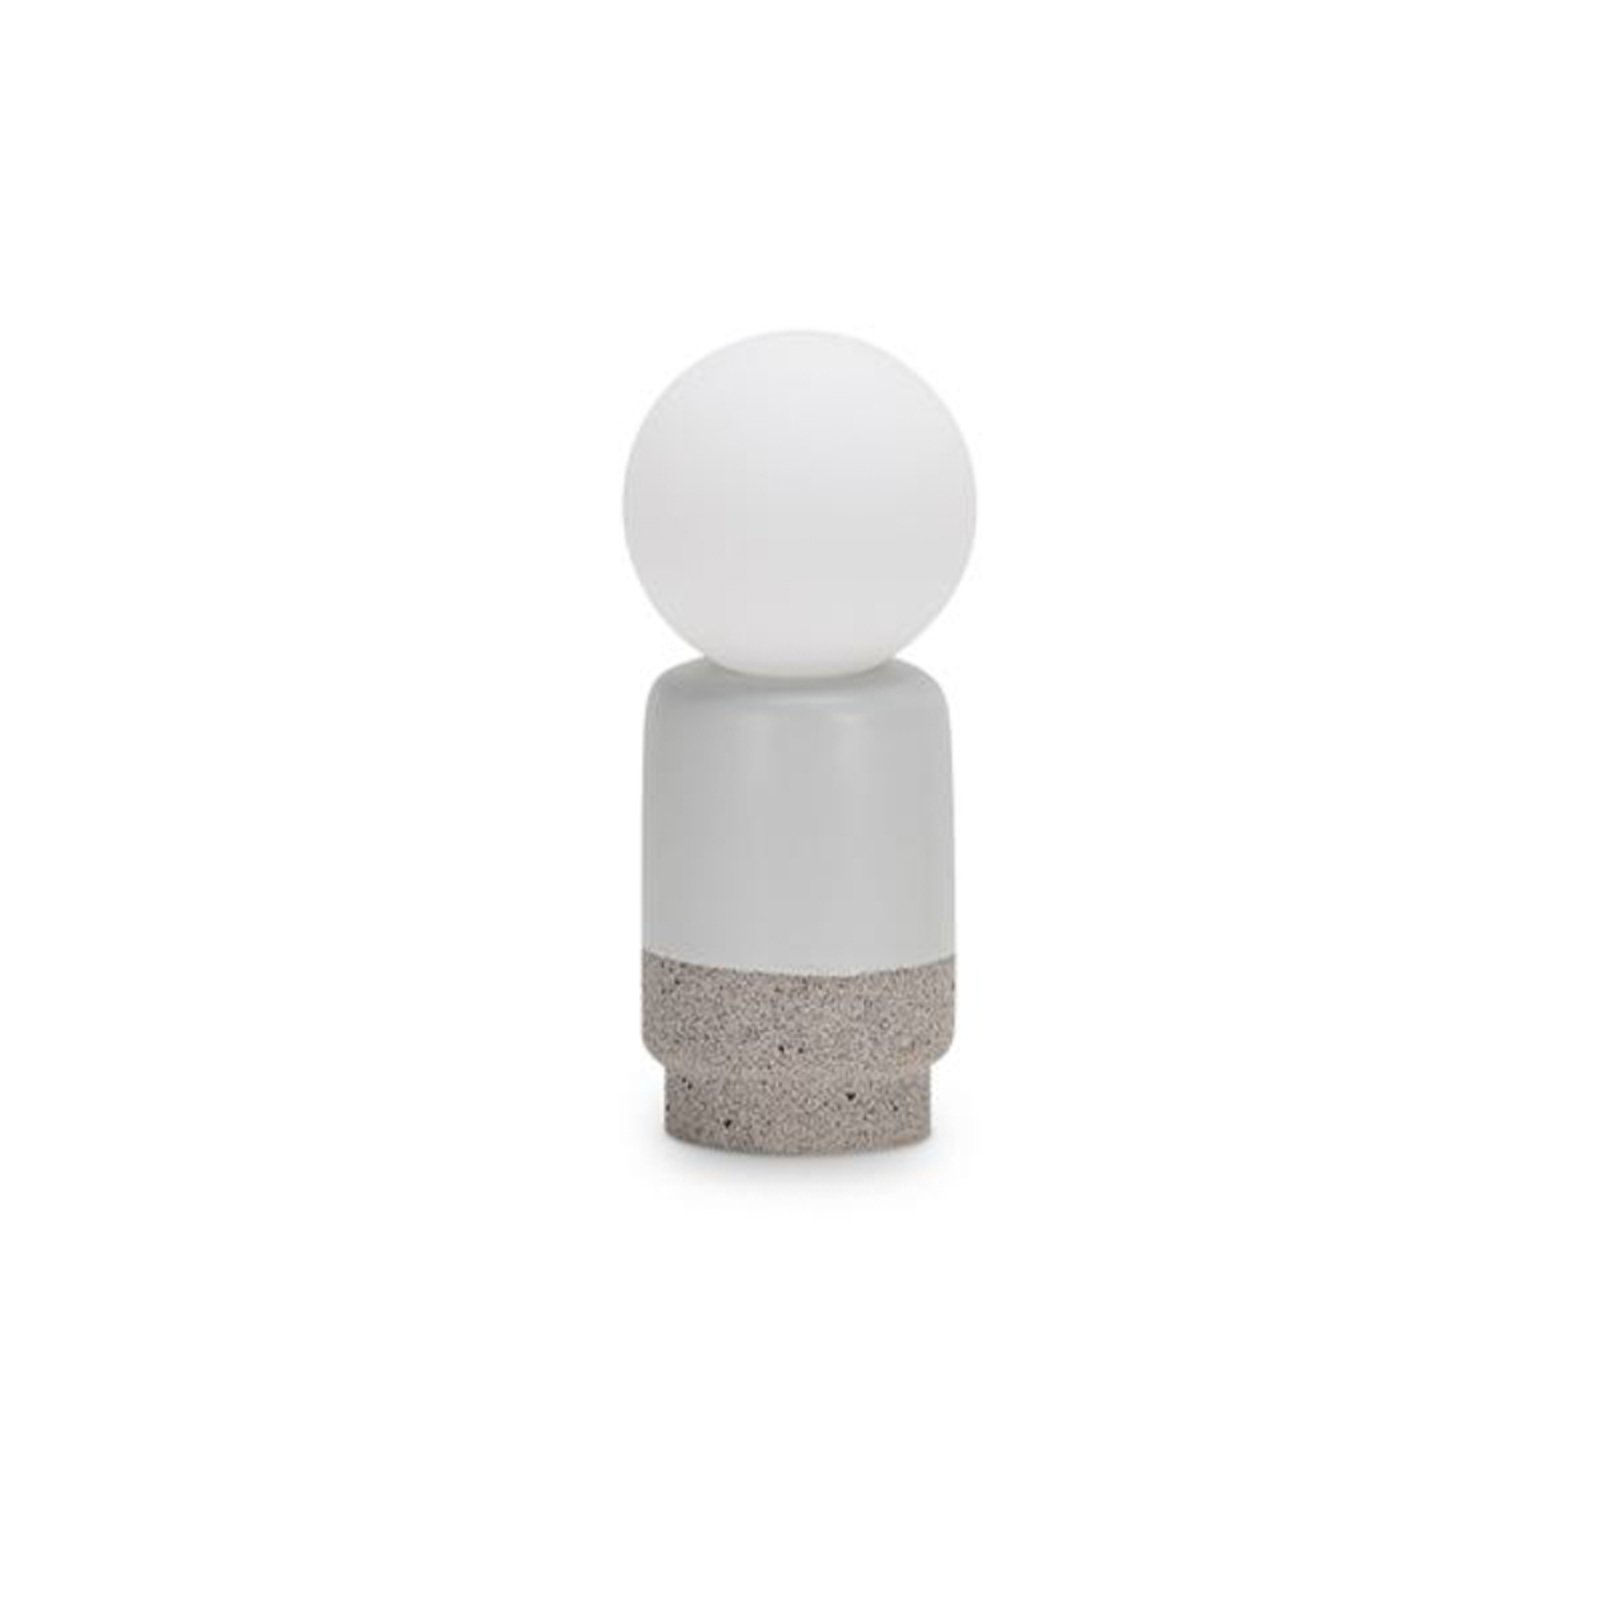 Ideal Lux Cream pöytävalaisin, korkeus 22 cm, valkoinen, kipsi, opaalilasi